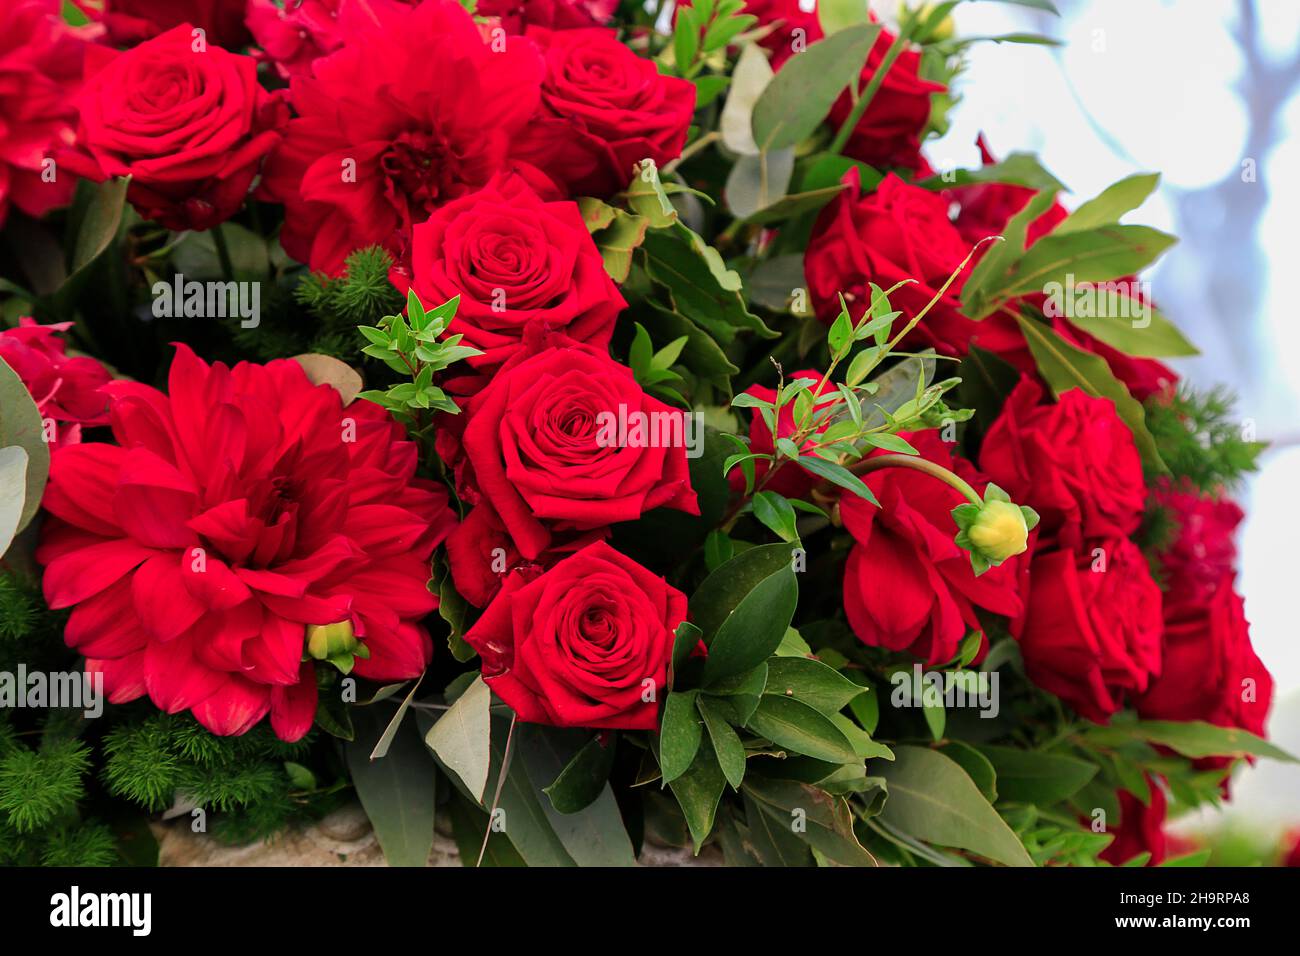 Großes Bouquet von scharlachroten Rosen und Dahlien mit smaragdgrünen Ästen von Lorbeerbaum. Nahaufnahme der Blumenhochzeit Dekoration. Natürliche, frische floristische Komposition Stockfoto